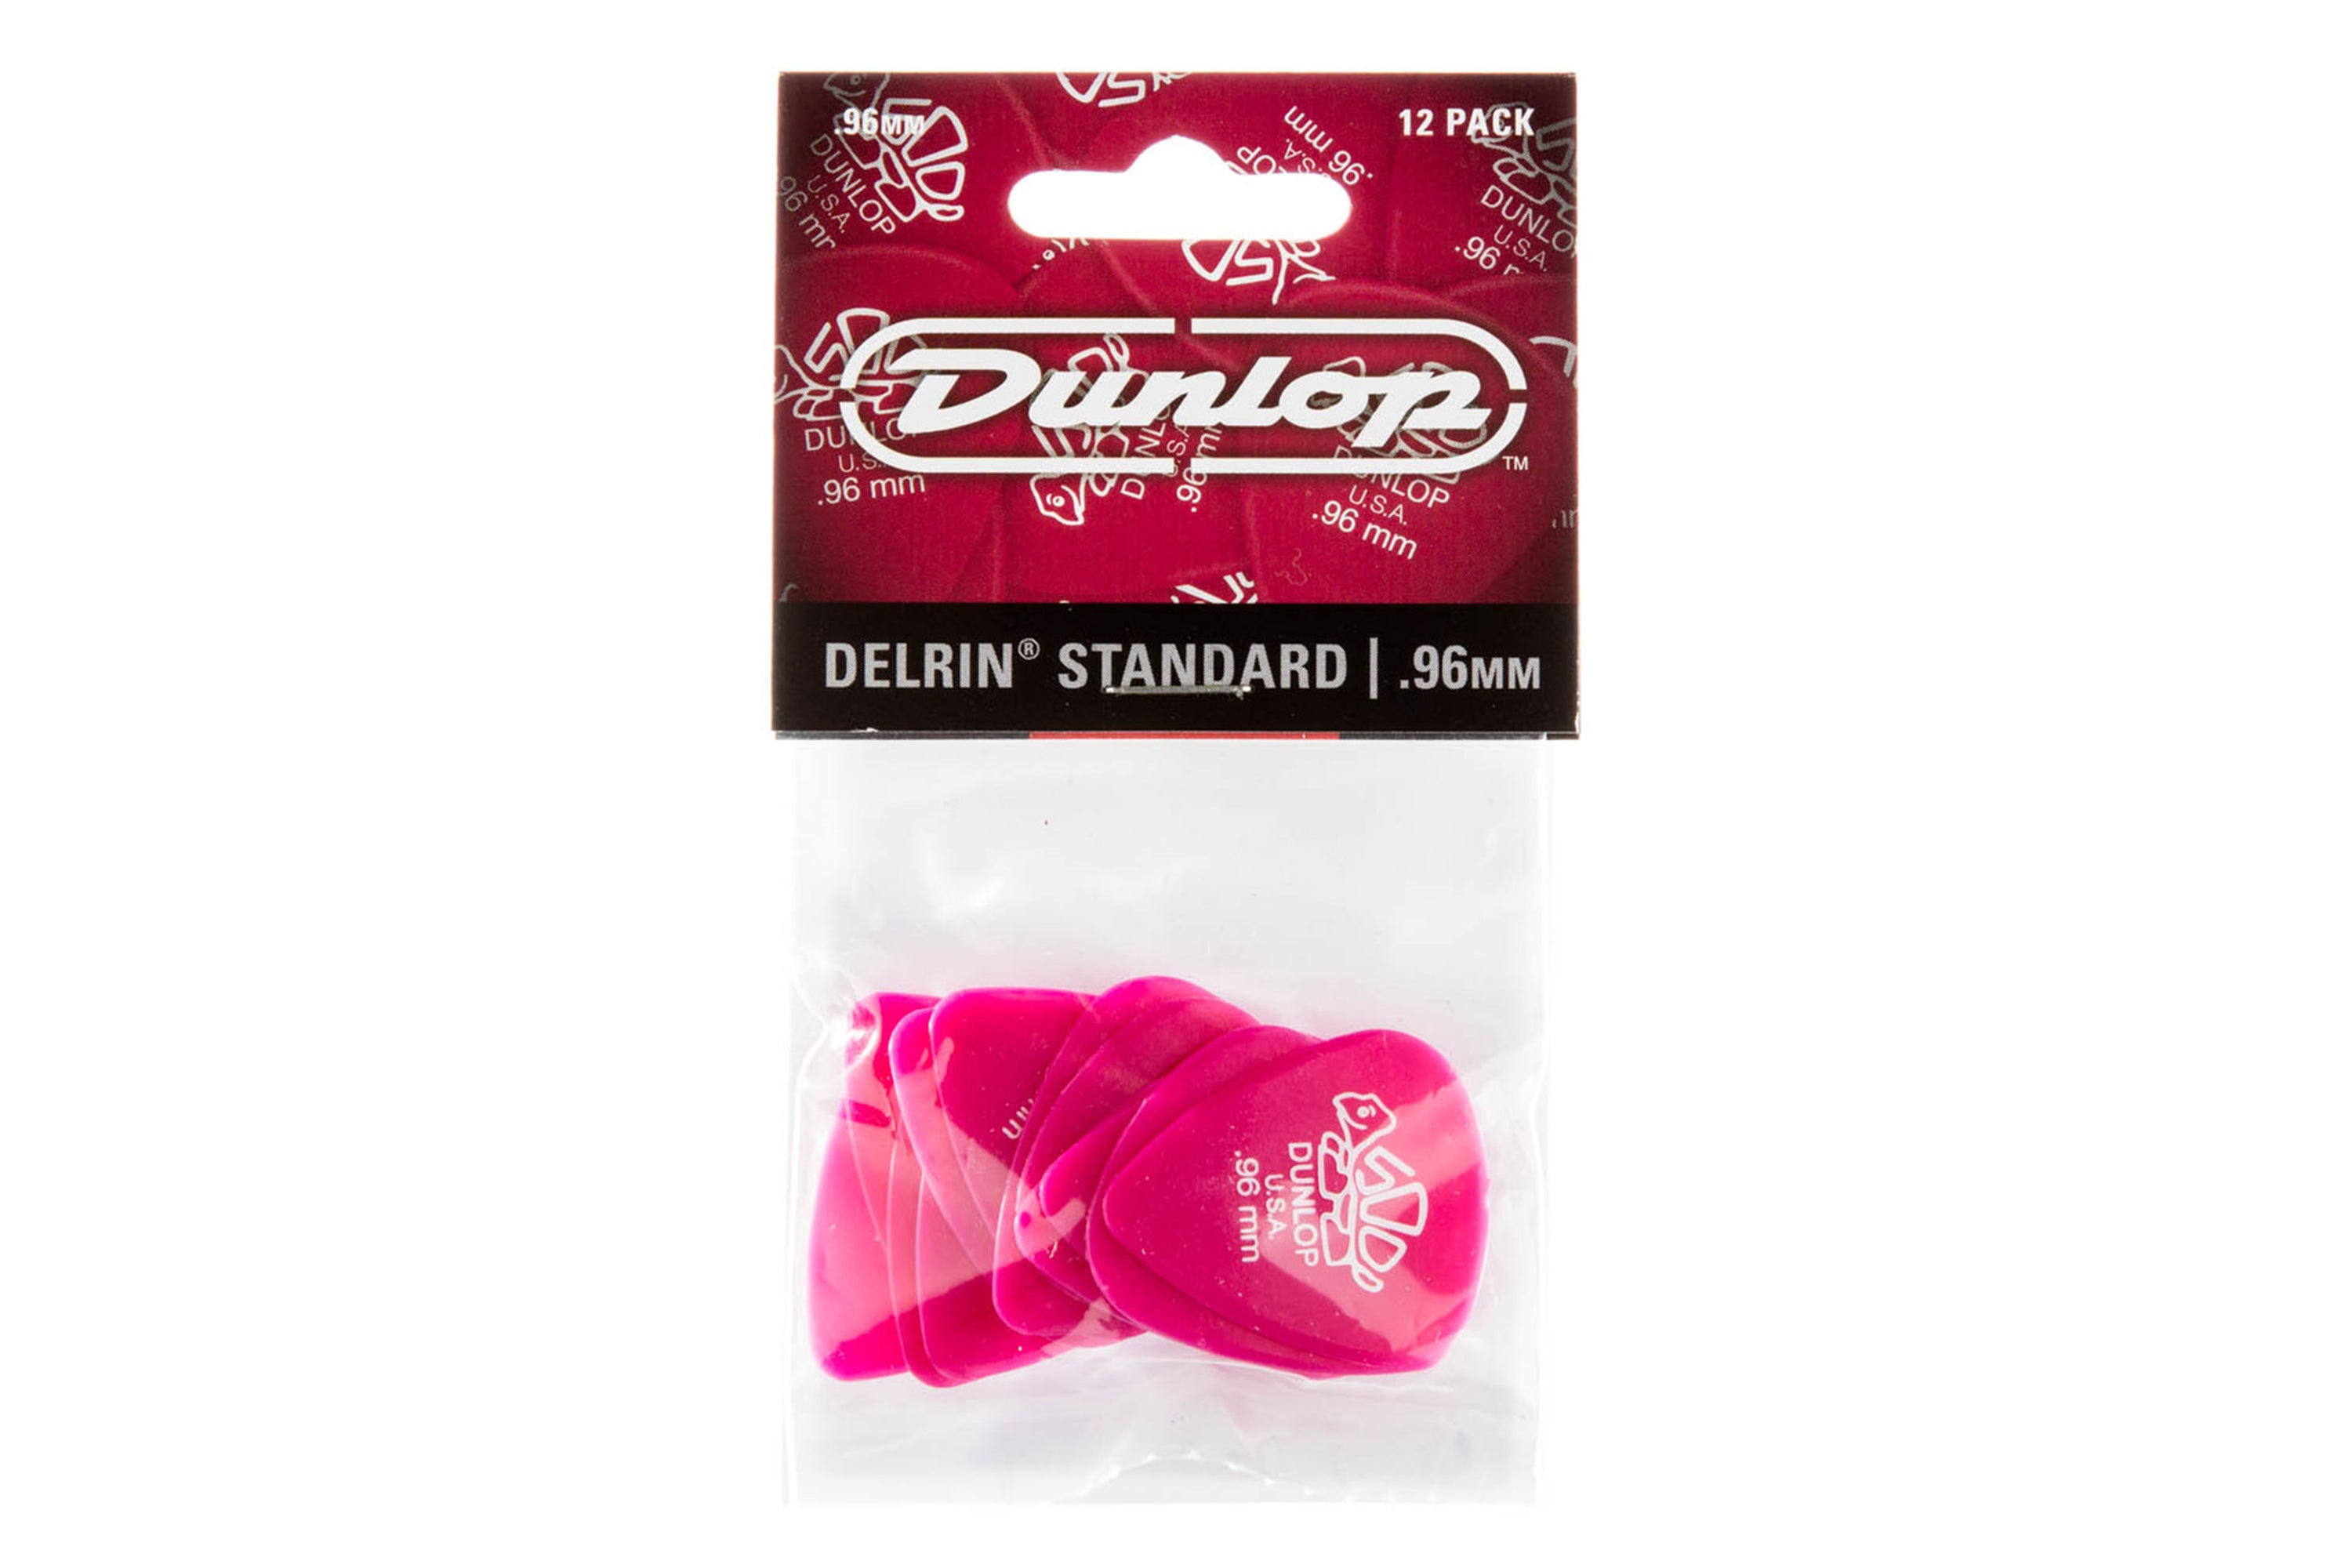 Dunlop Delrin 500 Standard .96mm Dark Pink Guitar & Ukulele Picks 12 Pack